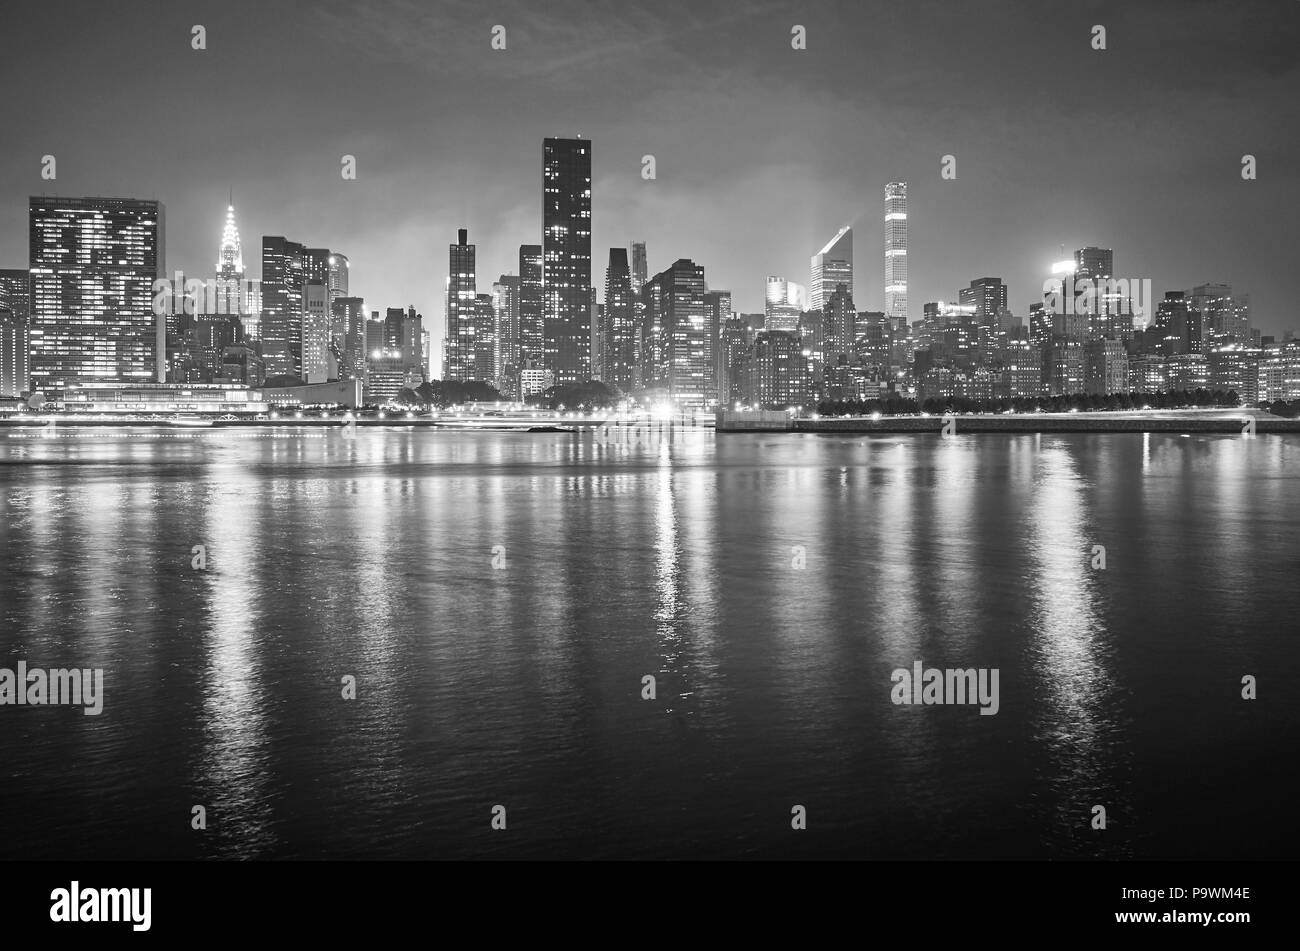 Photo noir et blanc de nuit à Manhattan, New York City, USA. Banque D'Images